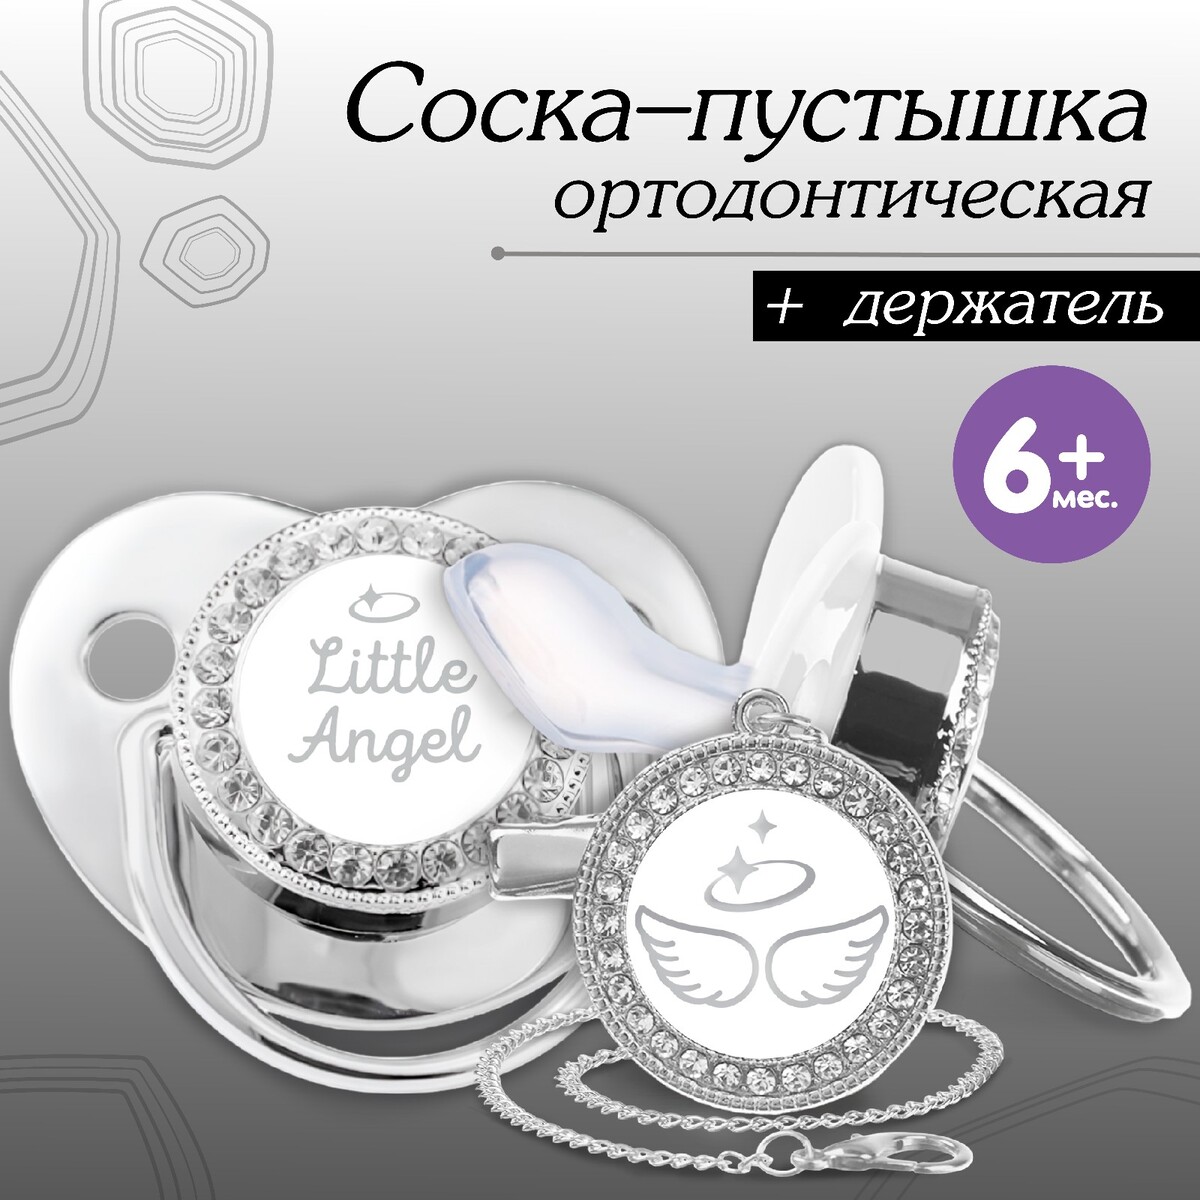 Набор: соска - пустышка ортодонтическая с держателем, little angel, с колпачком, от 6 мес., серебряная, стразы серебряная монетка